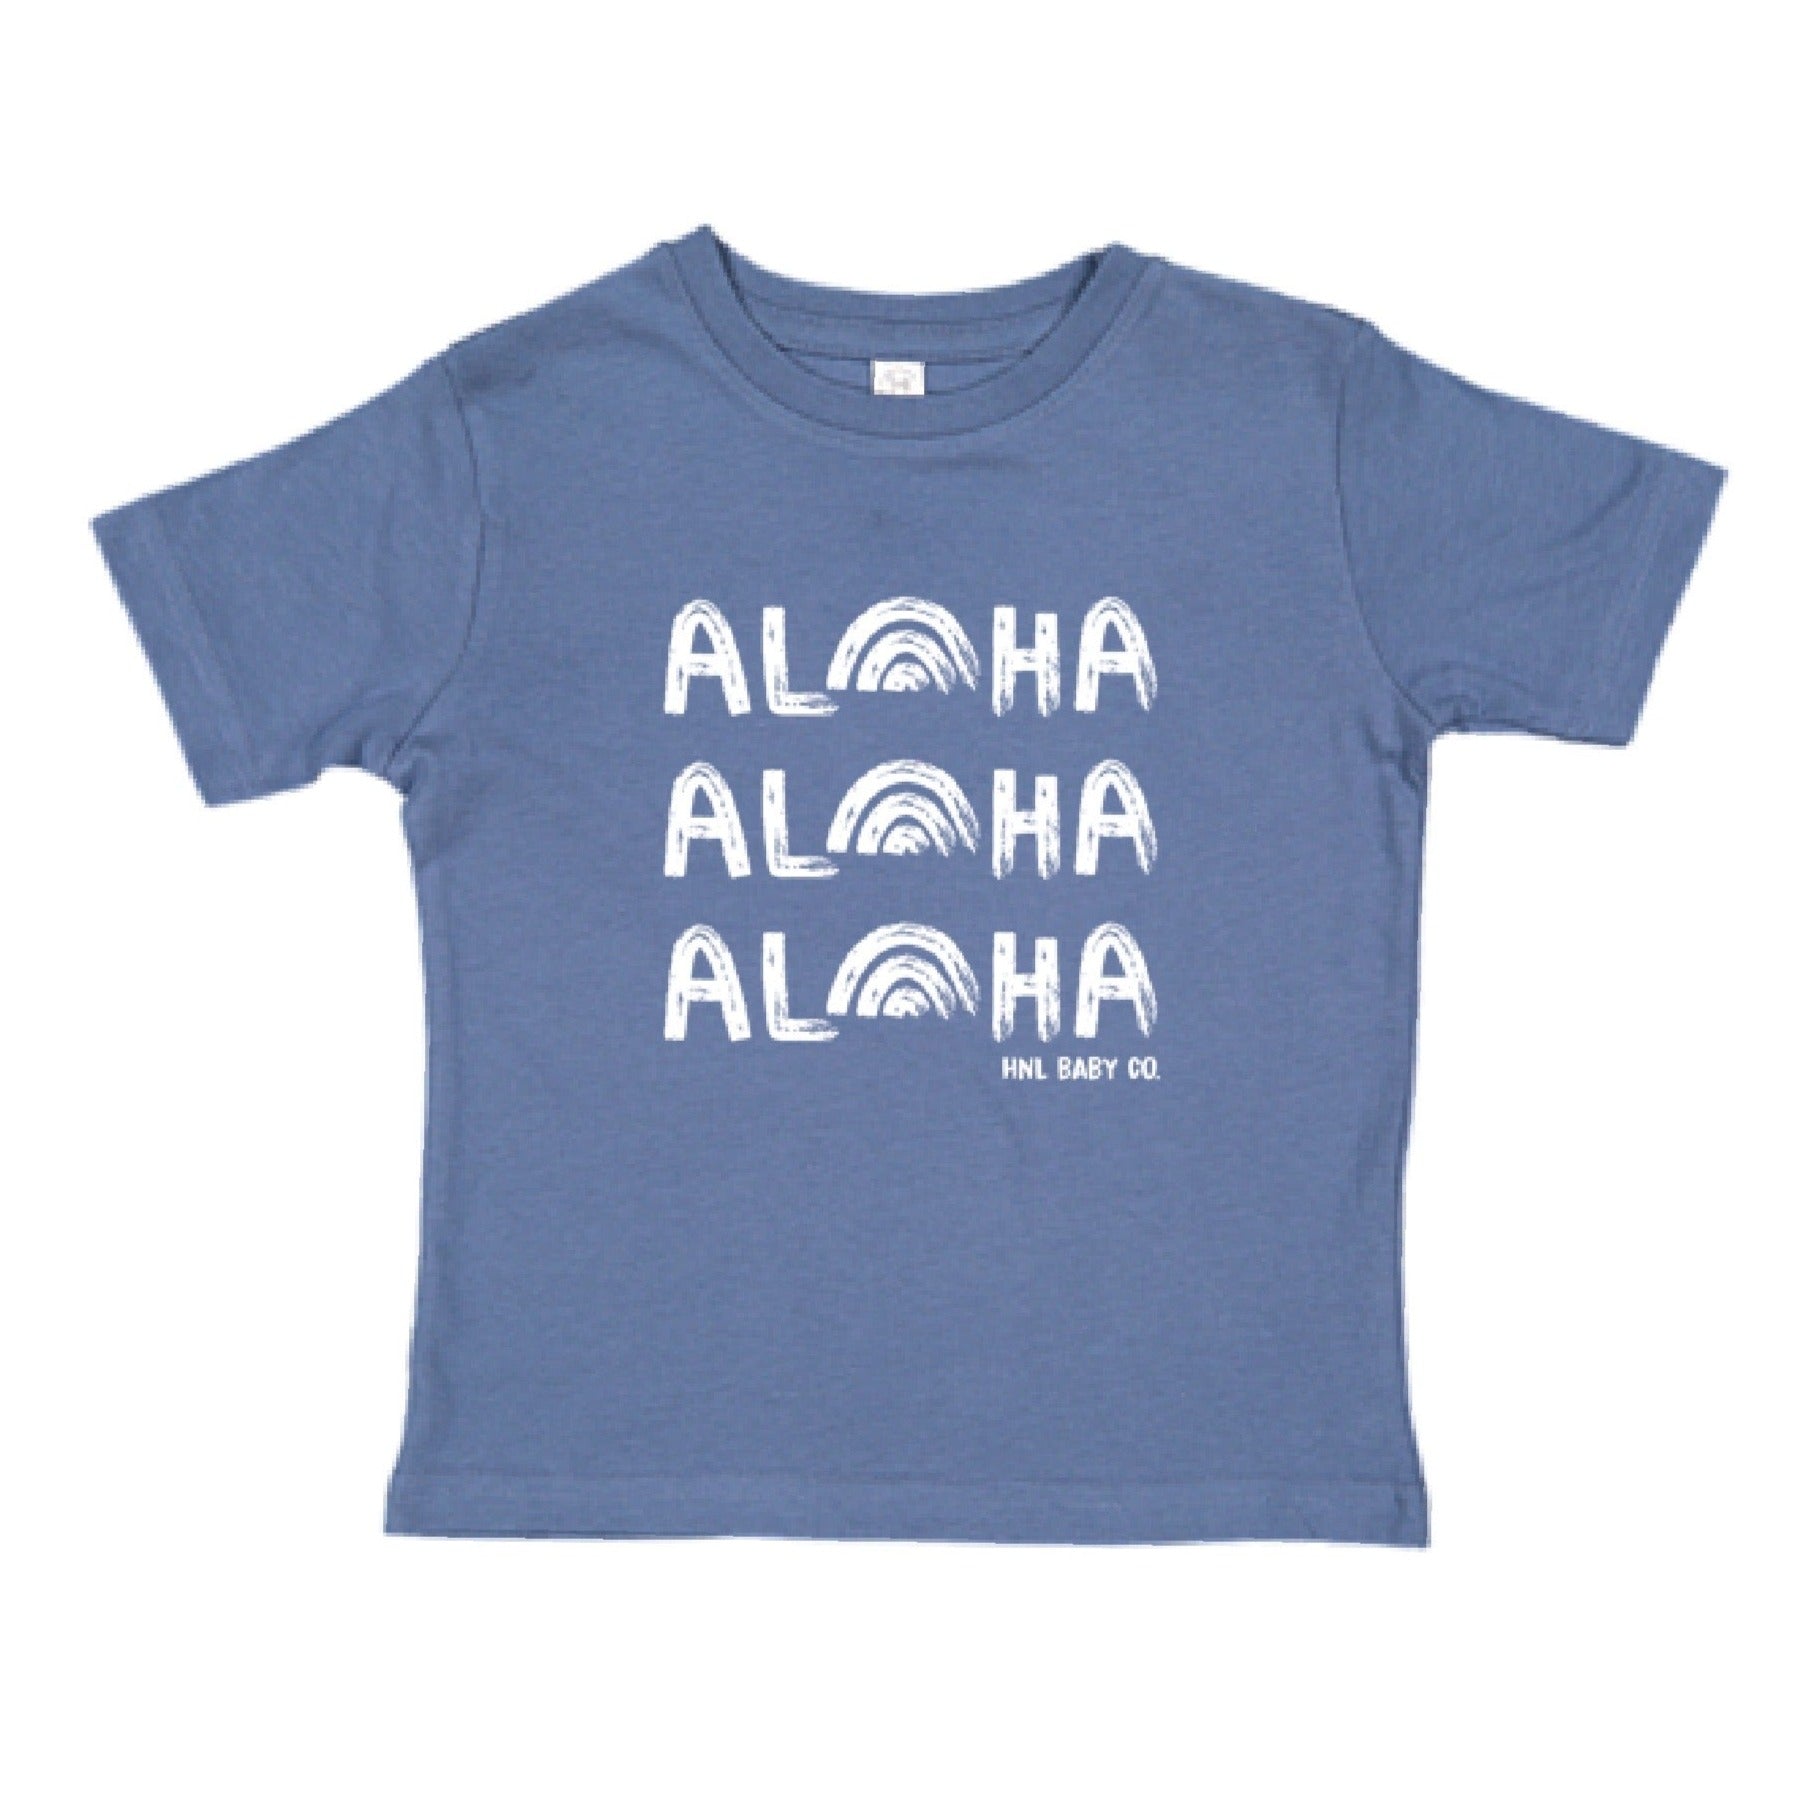 Pop-Up Mākeke - Honolulu Baby Co. - Aloha, Aloha, Aloha Keiki T-Shirt - Indigo